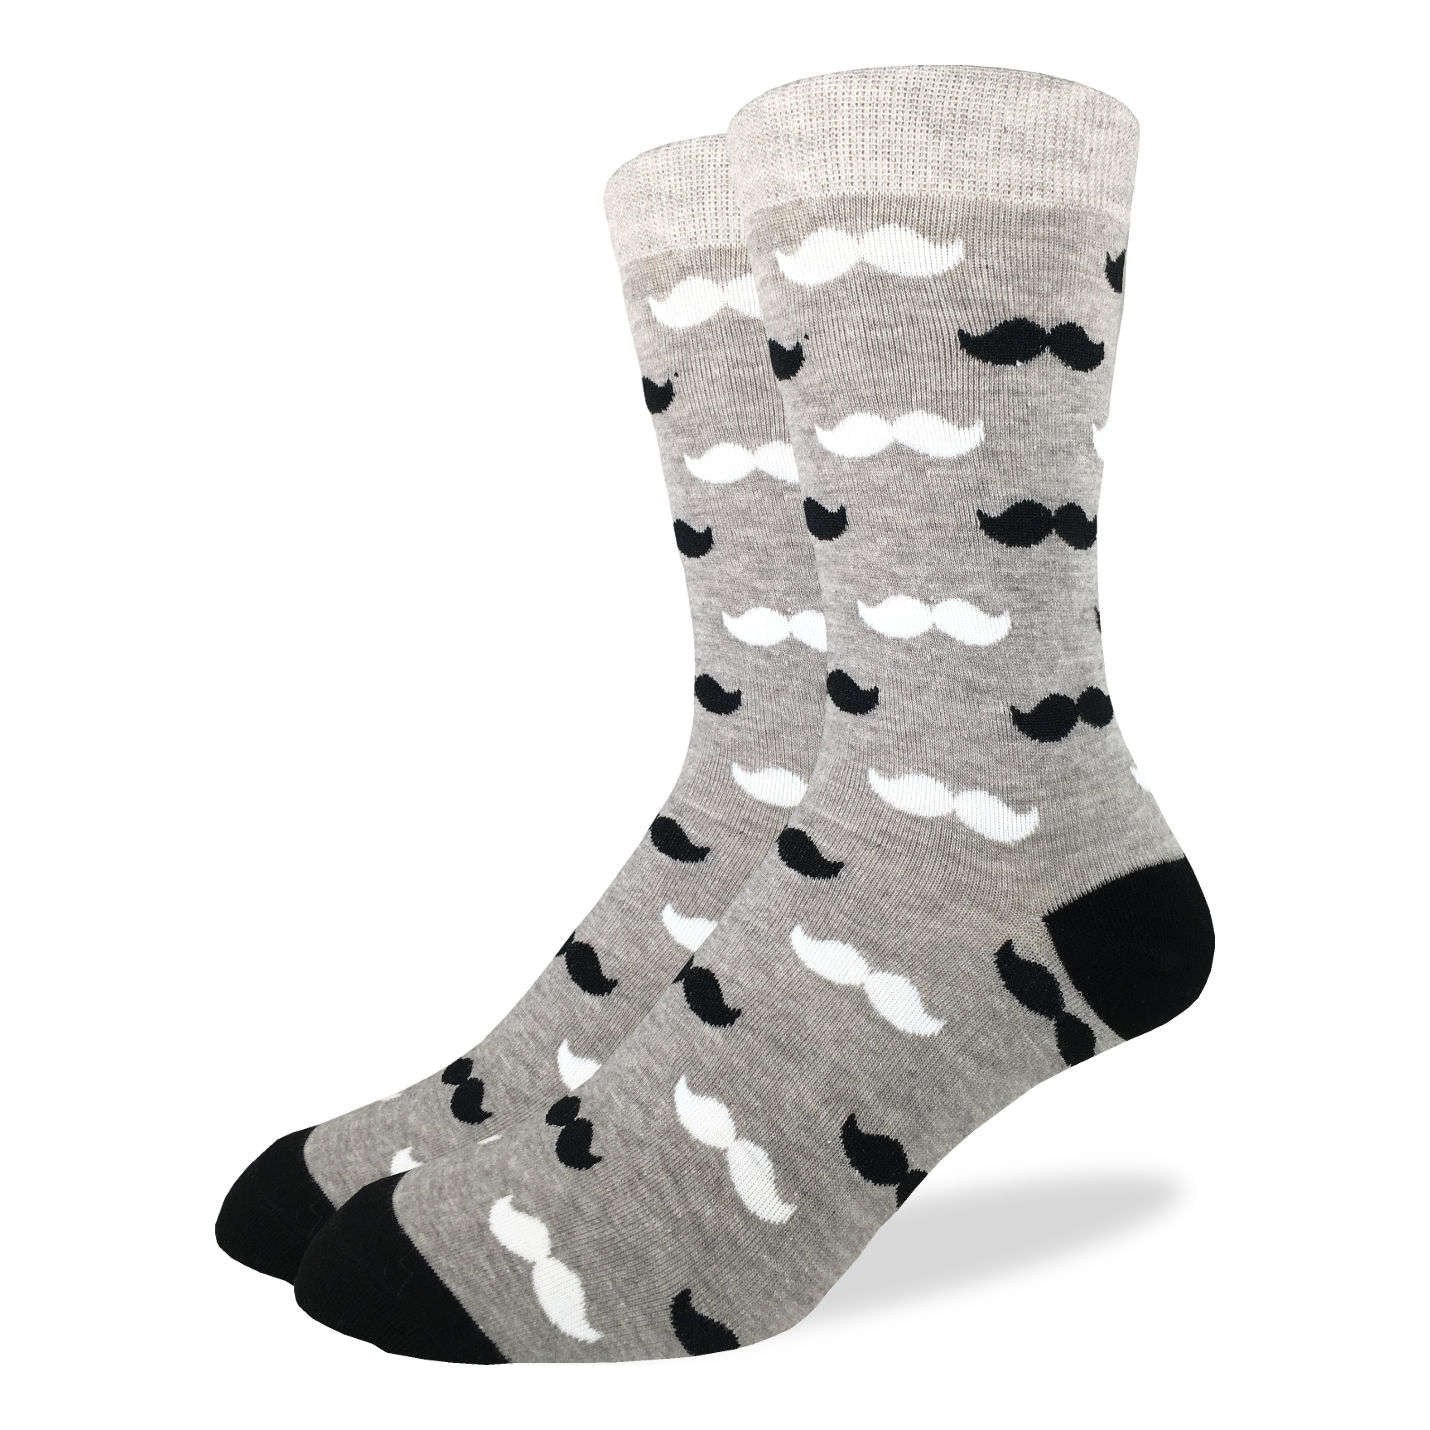 Men's Black & Grey Moustache Socks – Good Luck Sock